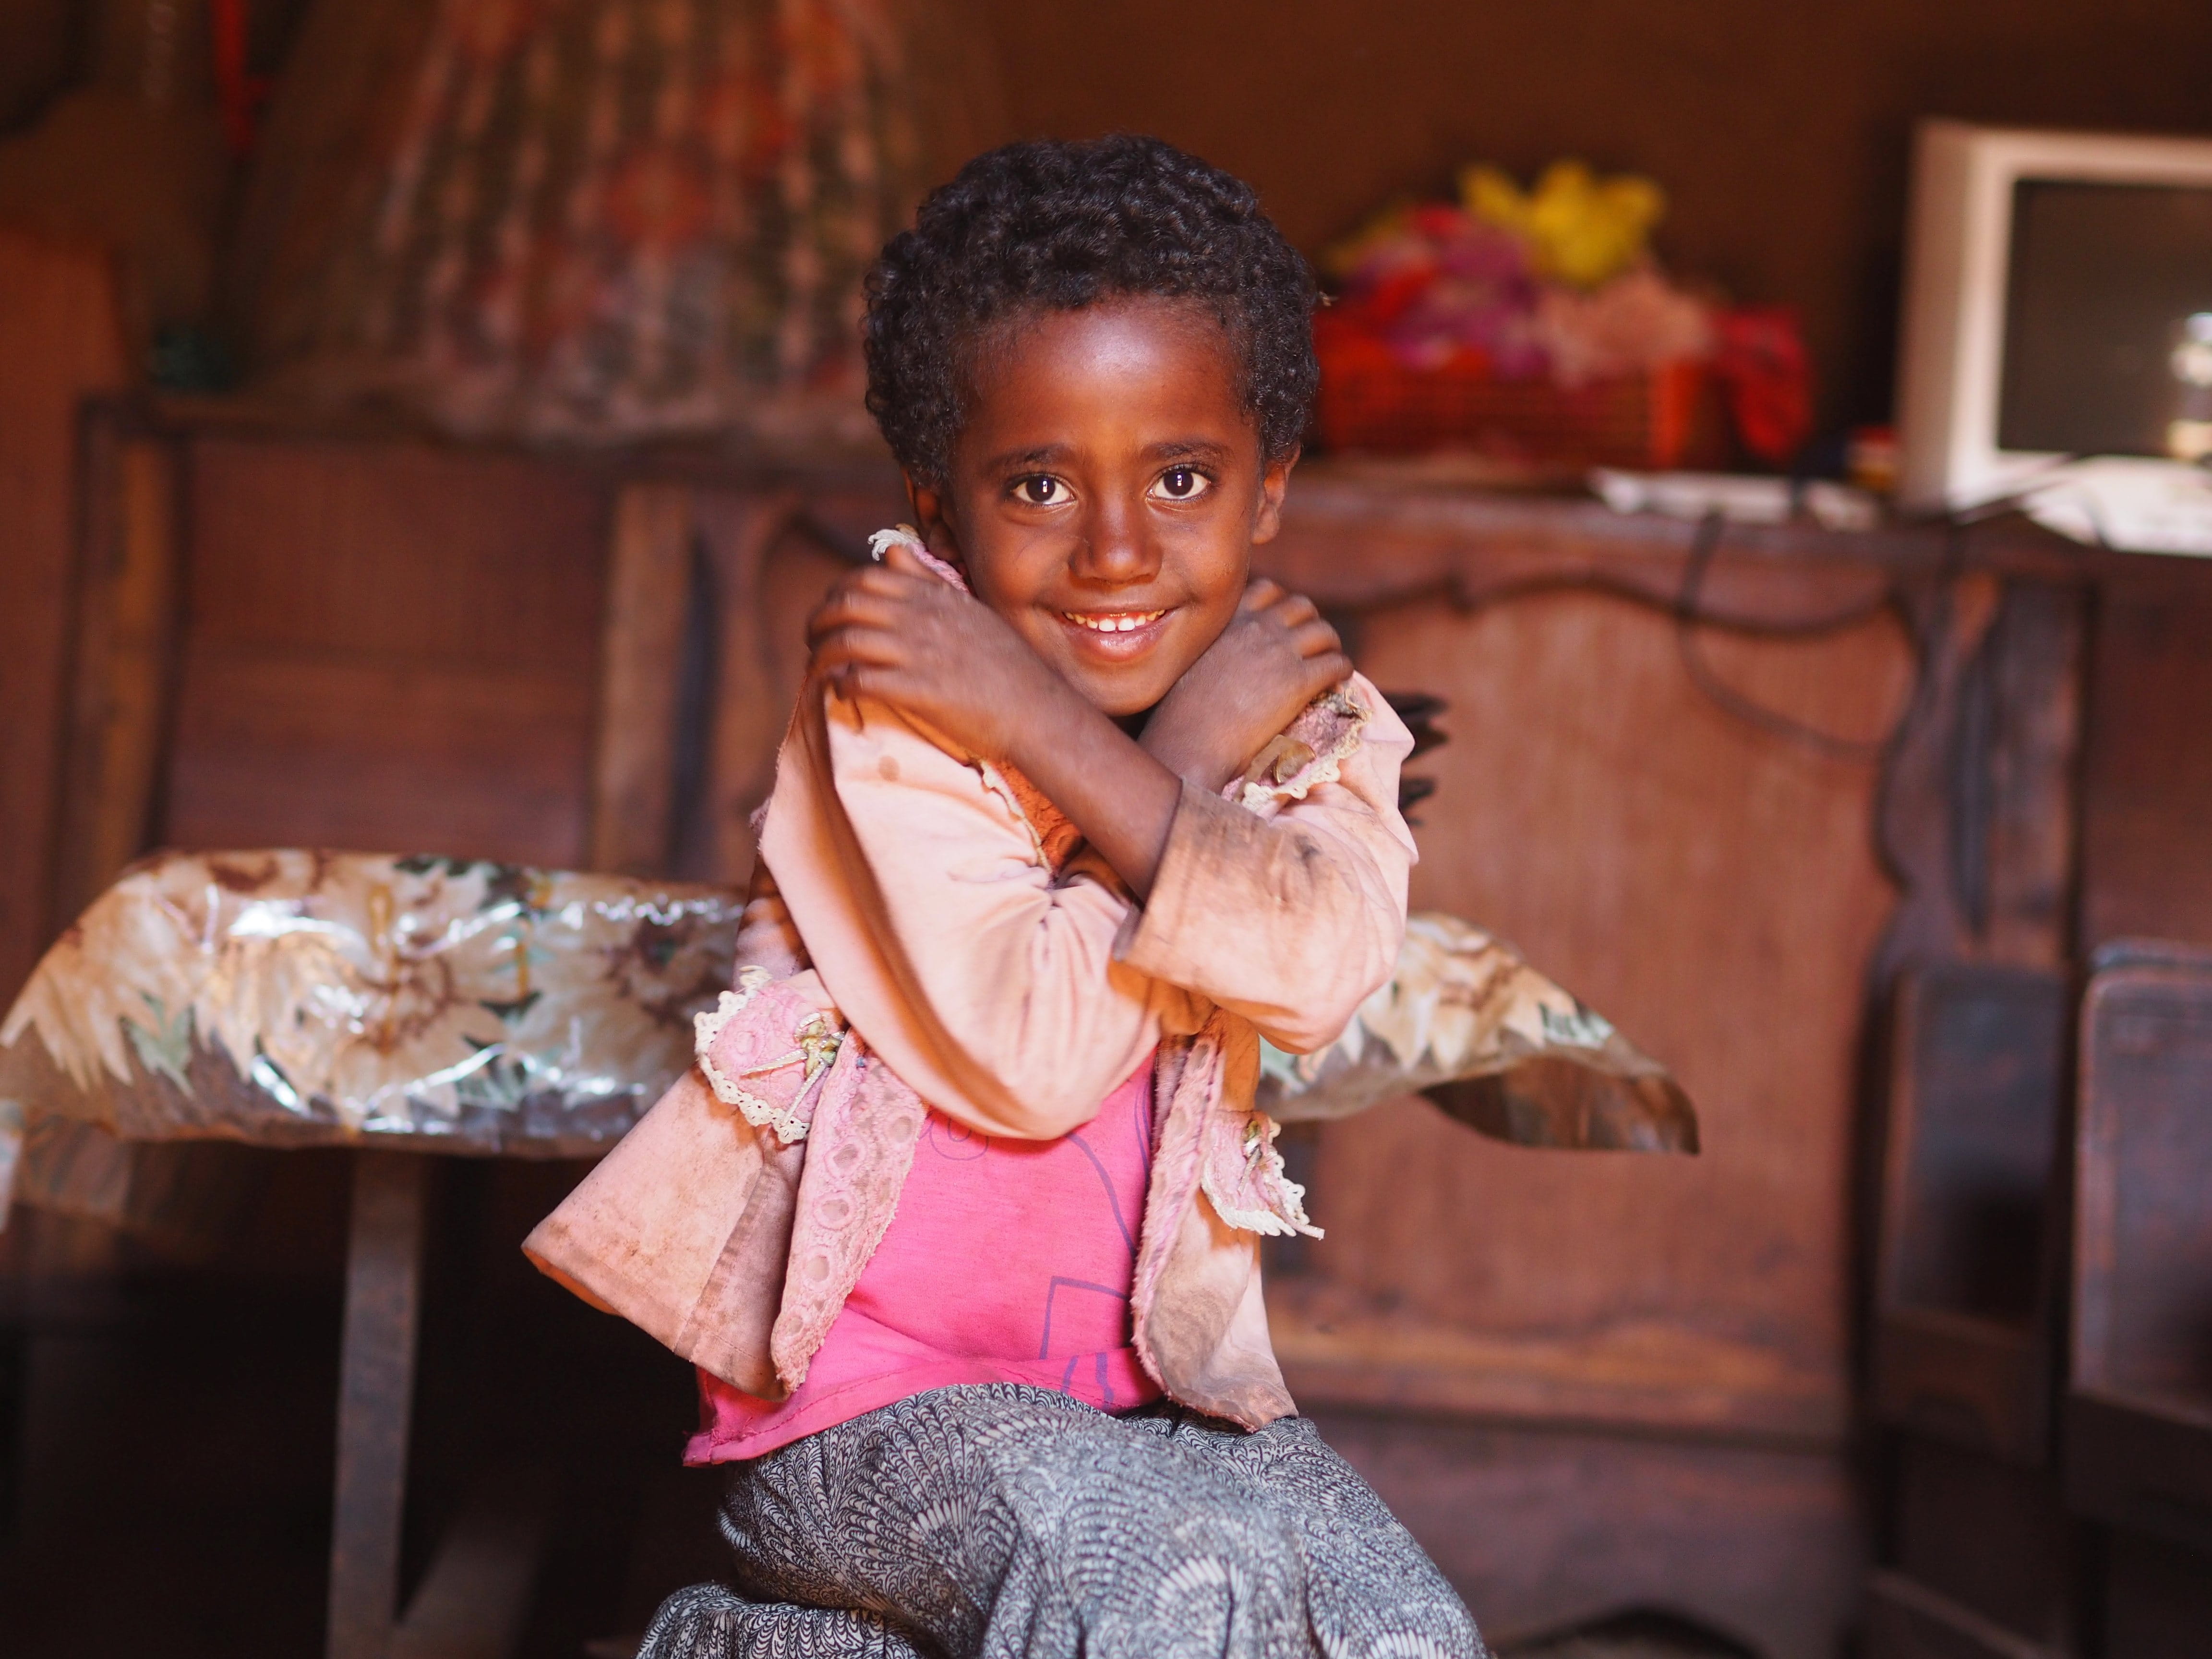 Reportage Äthiopien: "Verkauft und ausgebeutet"; Foto: Mädchen lächelt in Kamera (Quelle: Malte Pfau / Kindernothilfe)